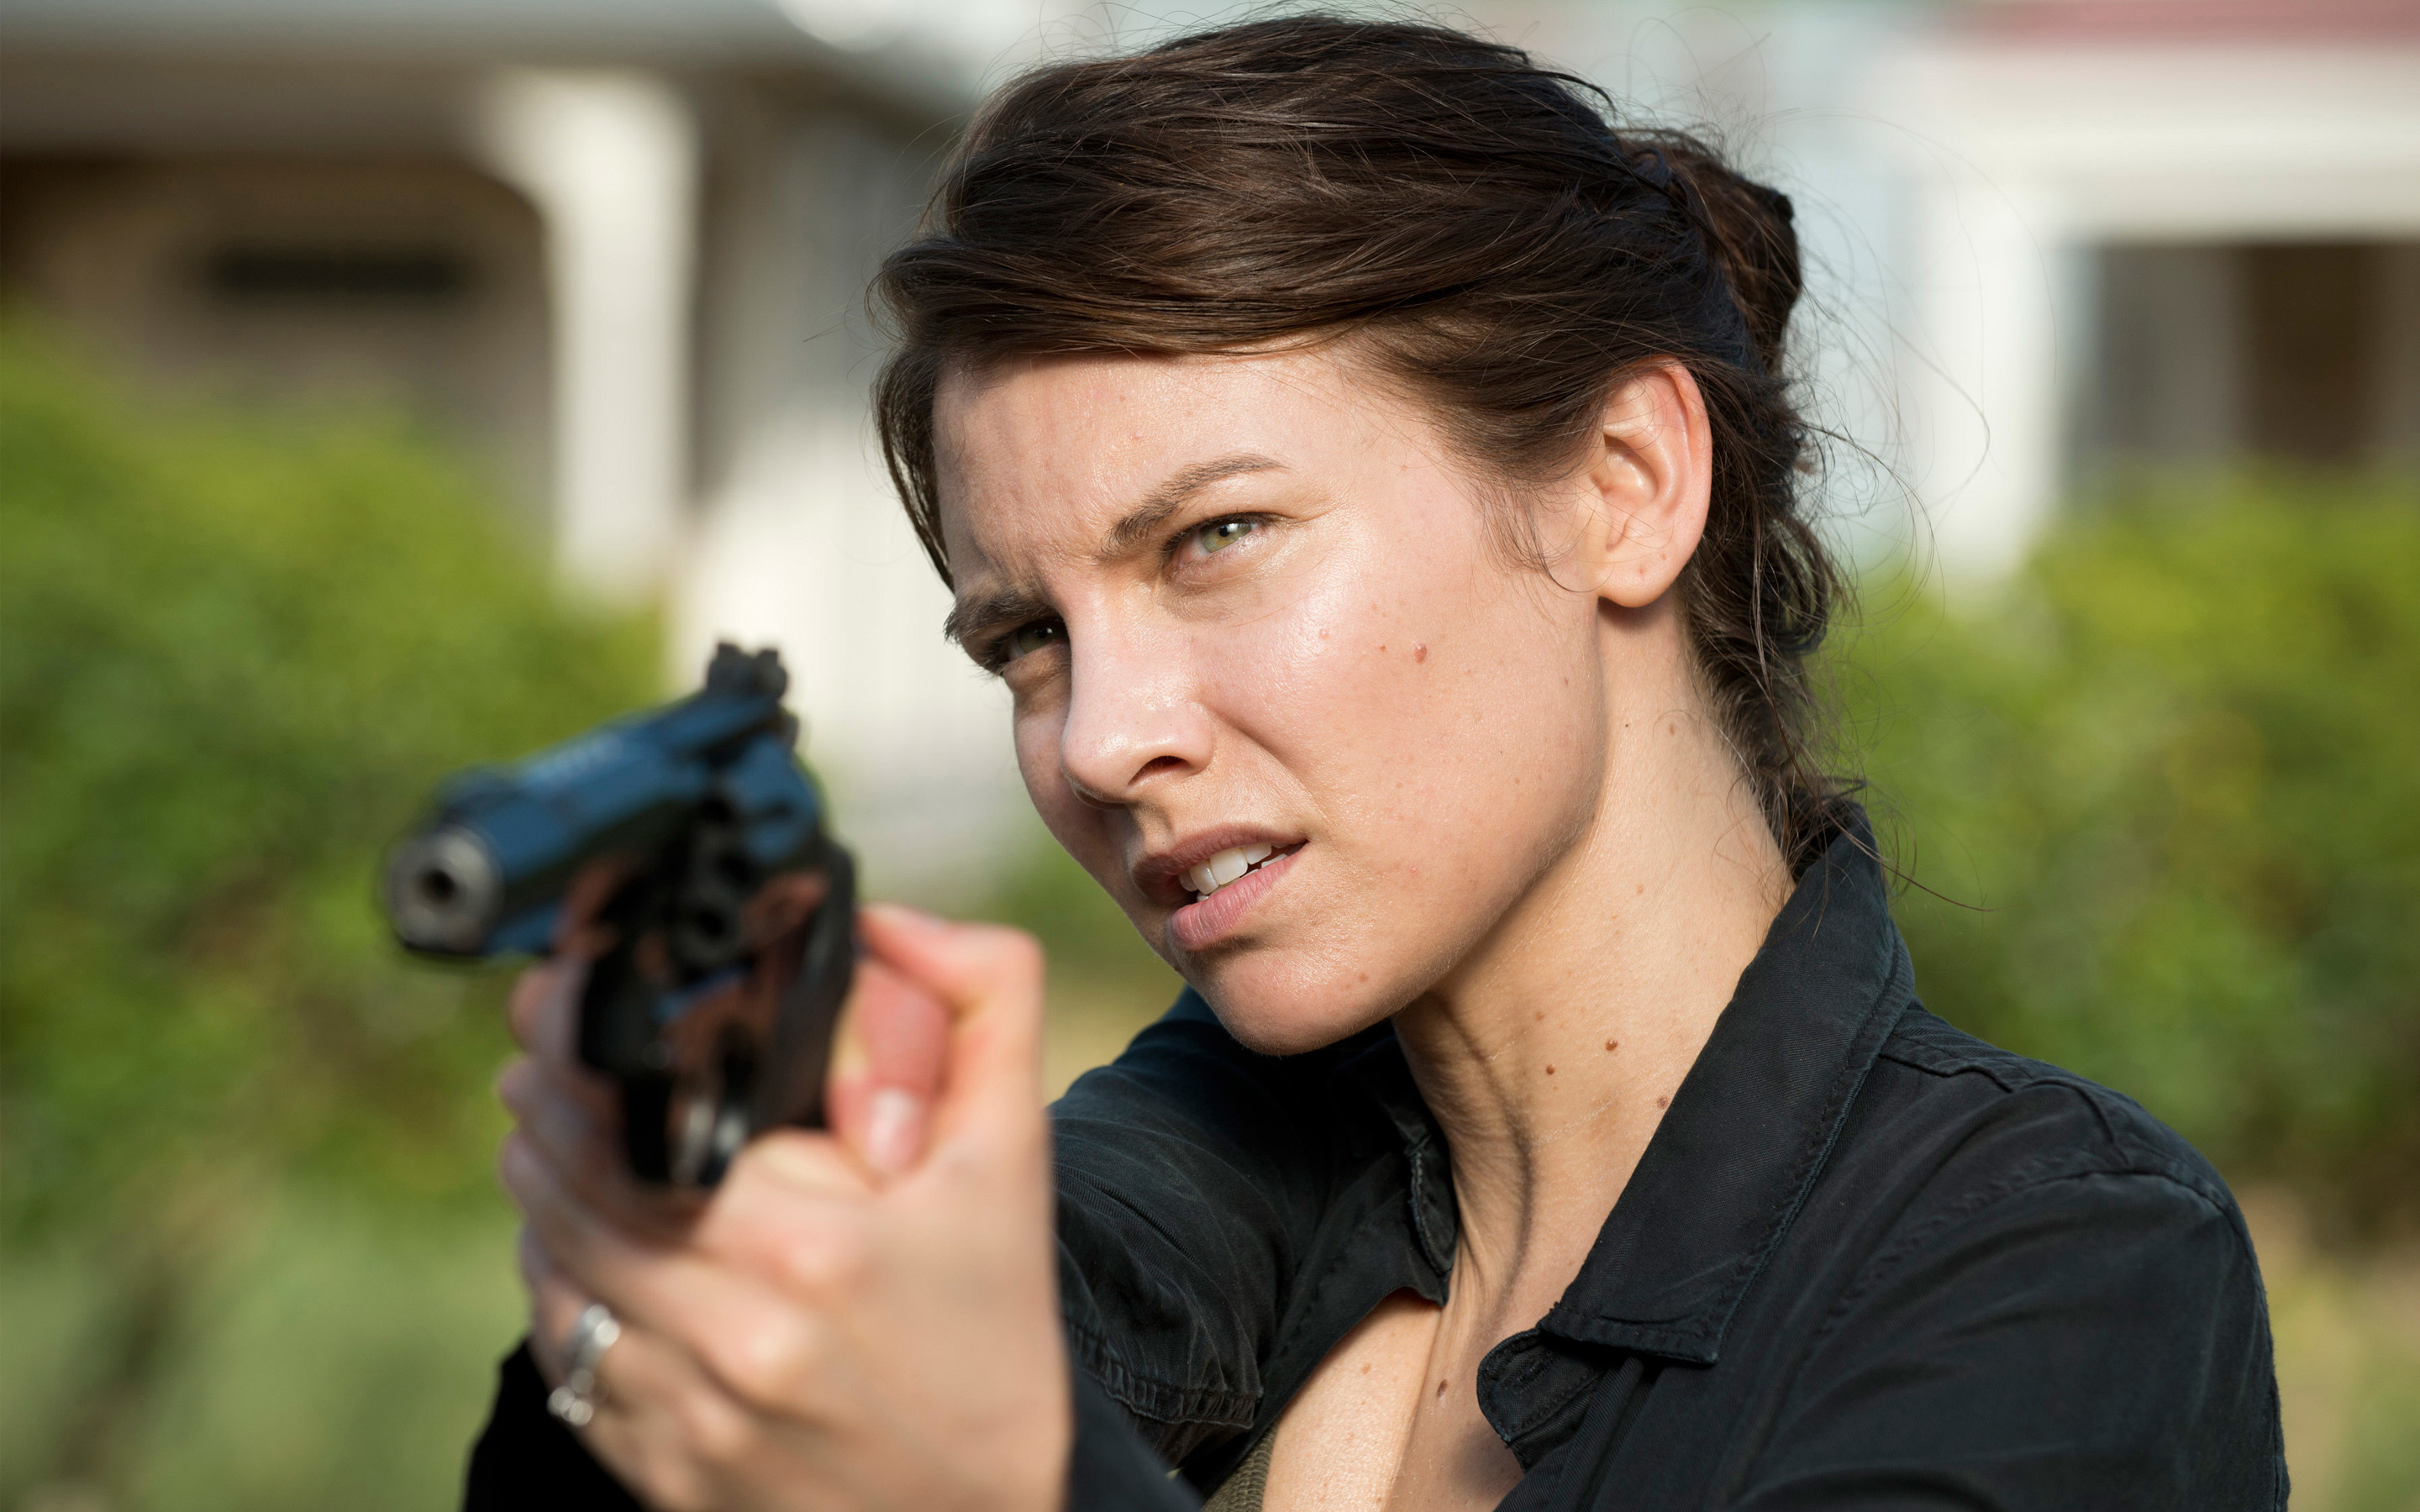 Maggie The Walking Dead Season 6